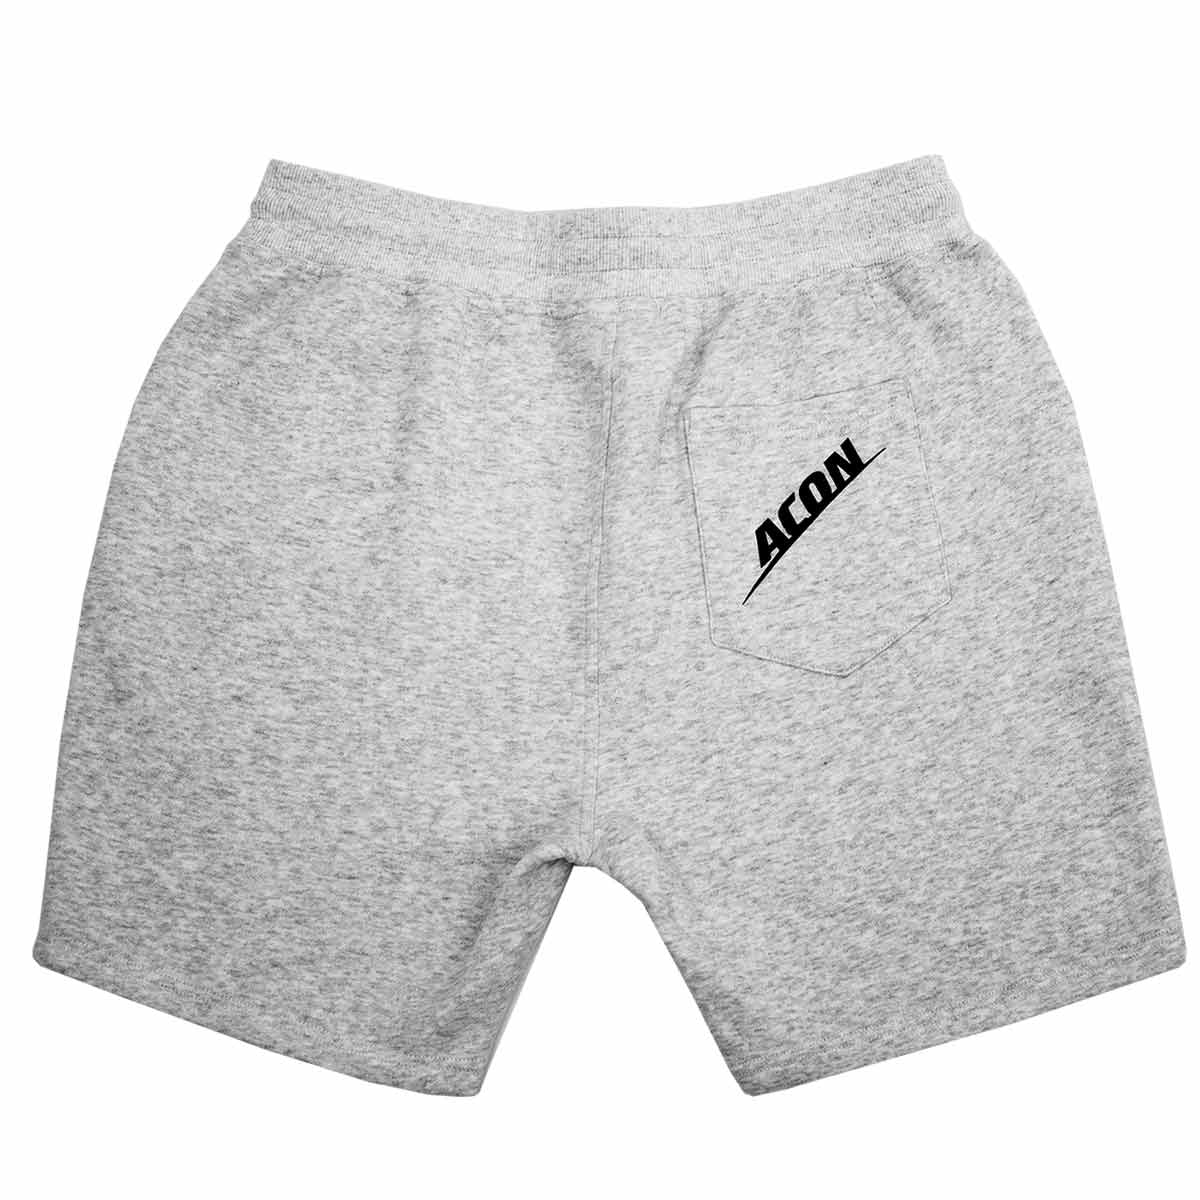 ACON Shorts - Acon-us